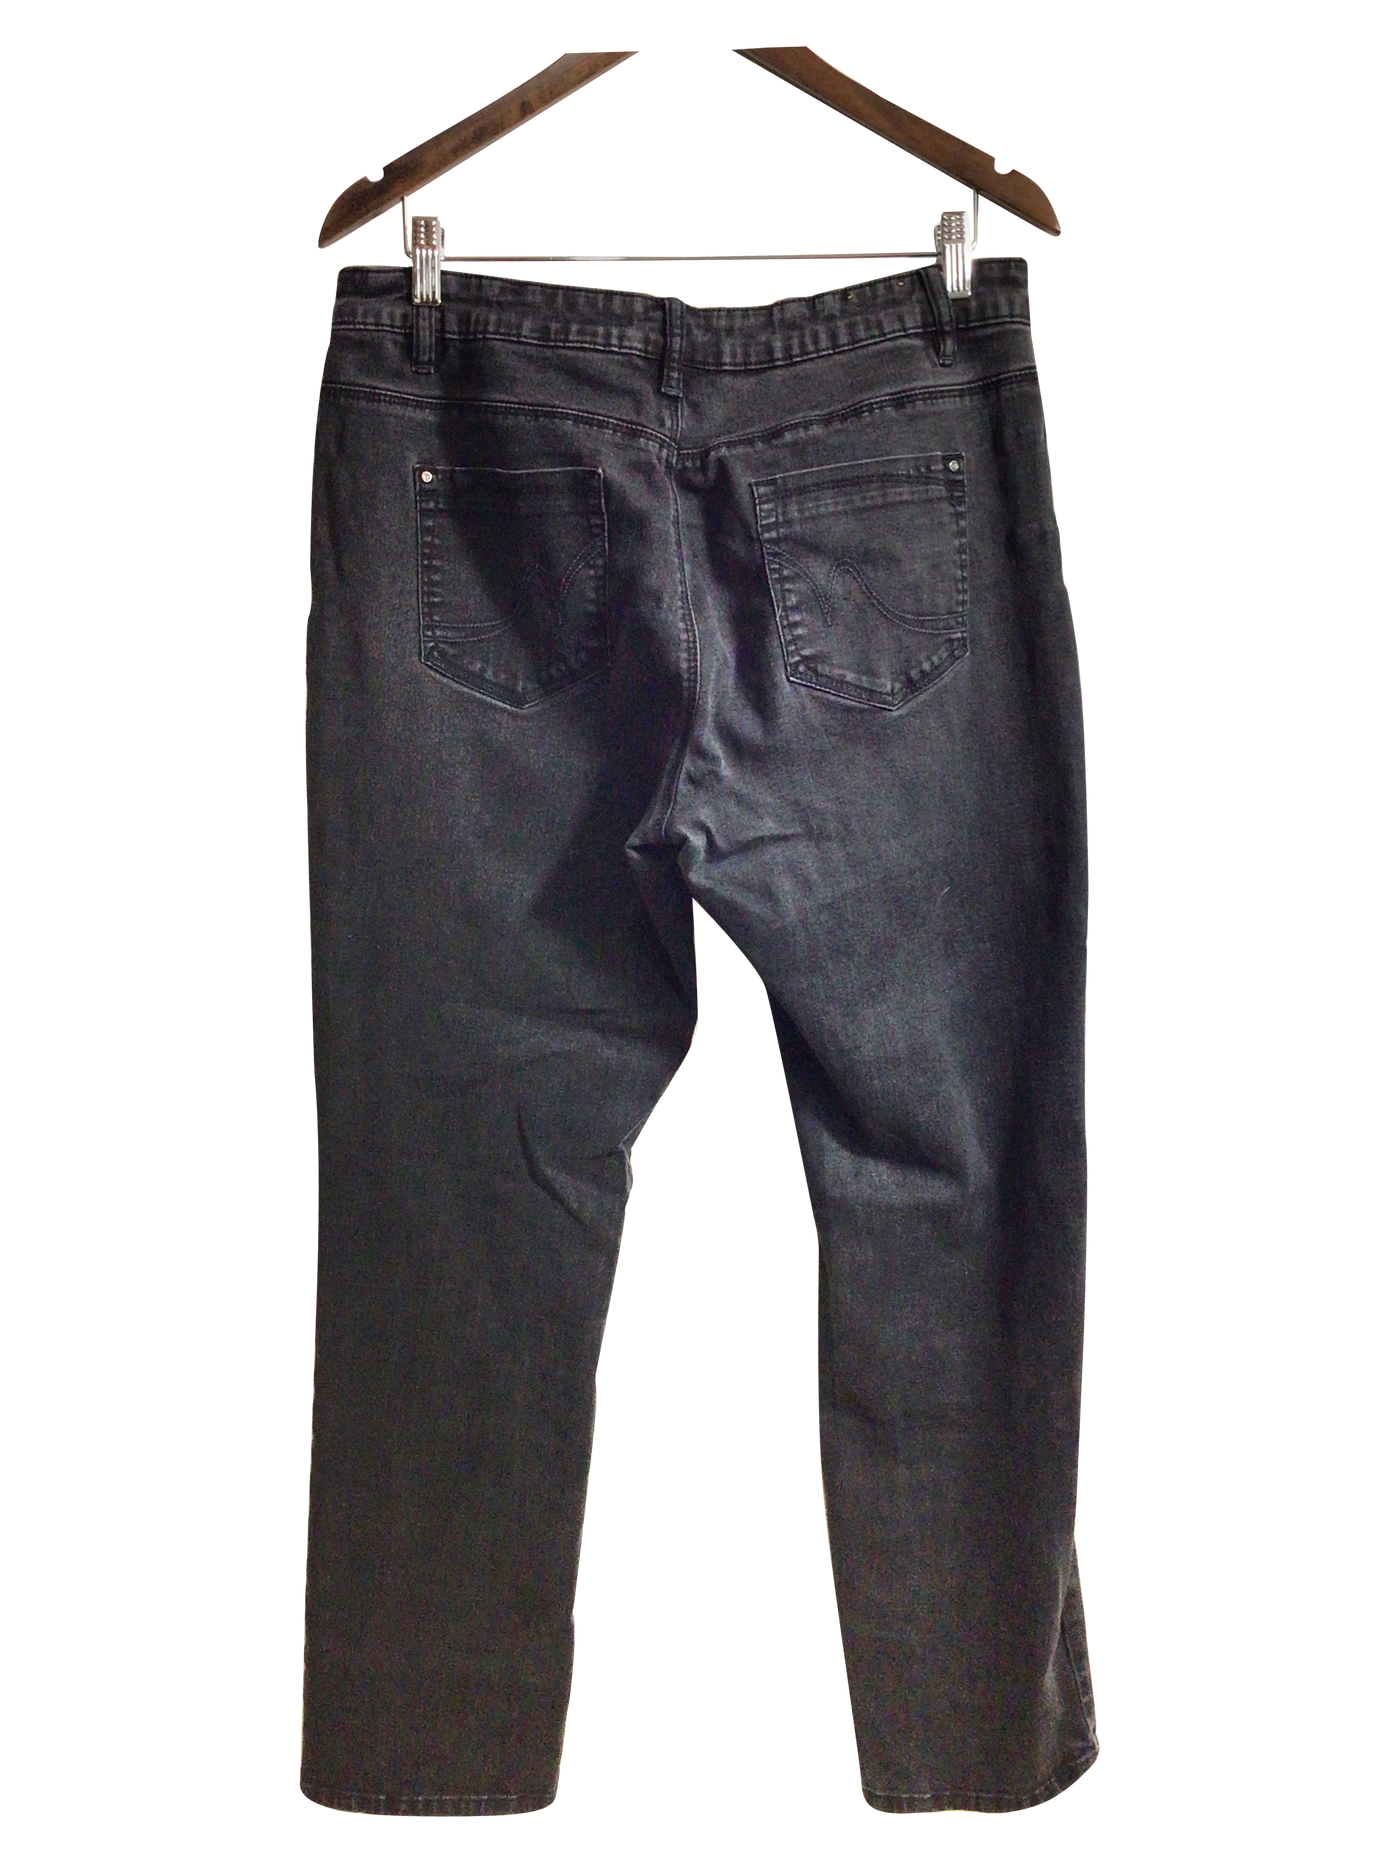 SANTANA JEANS Women Straight-Legged Jeans Regular fit in Black - Size 14x32 | 7.99 $ KOOP